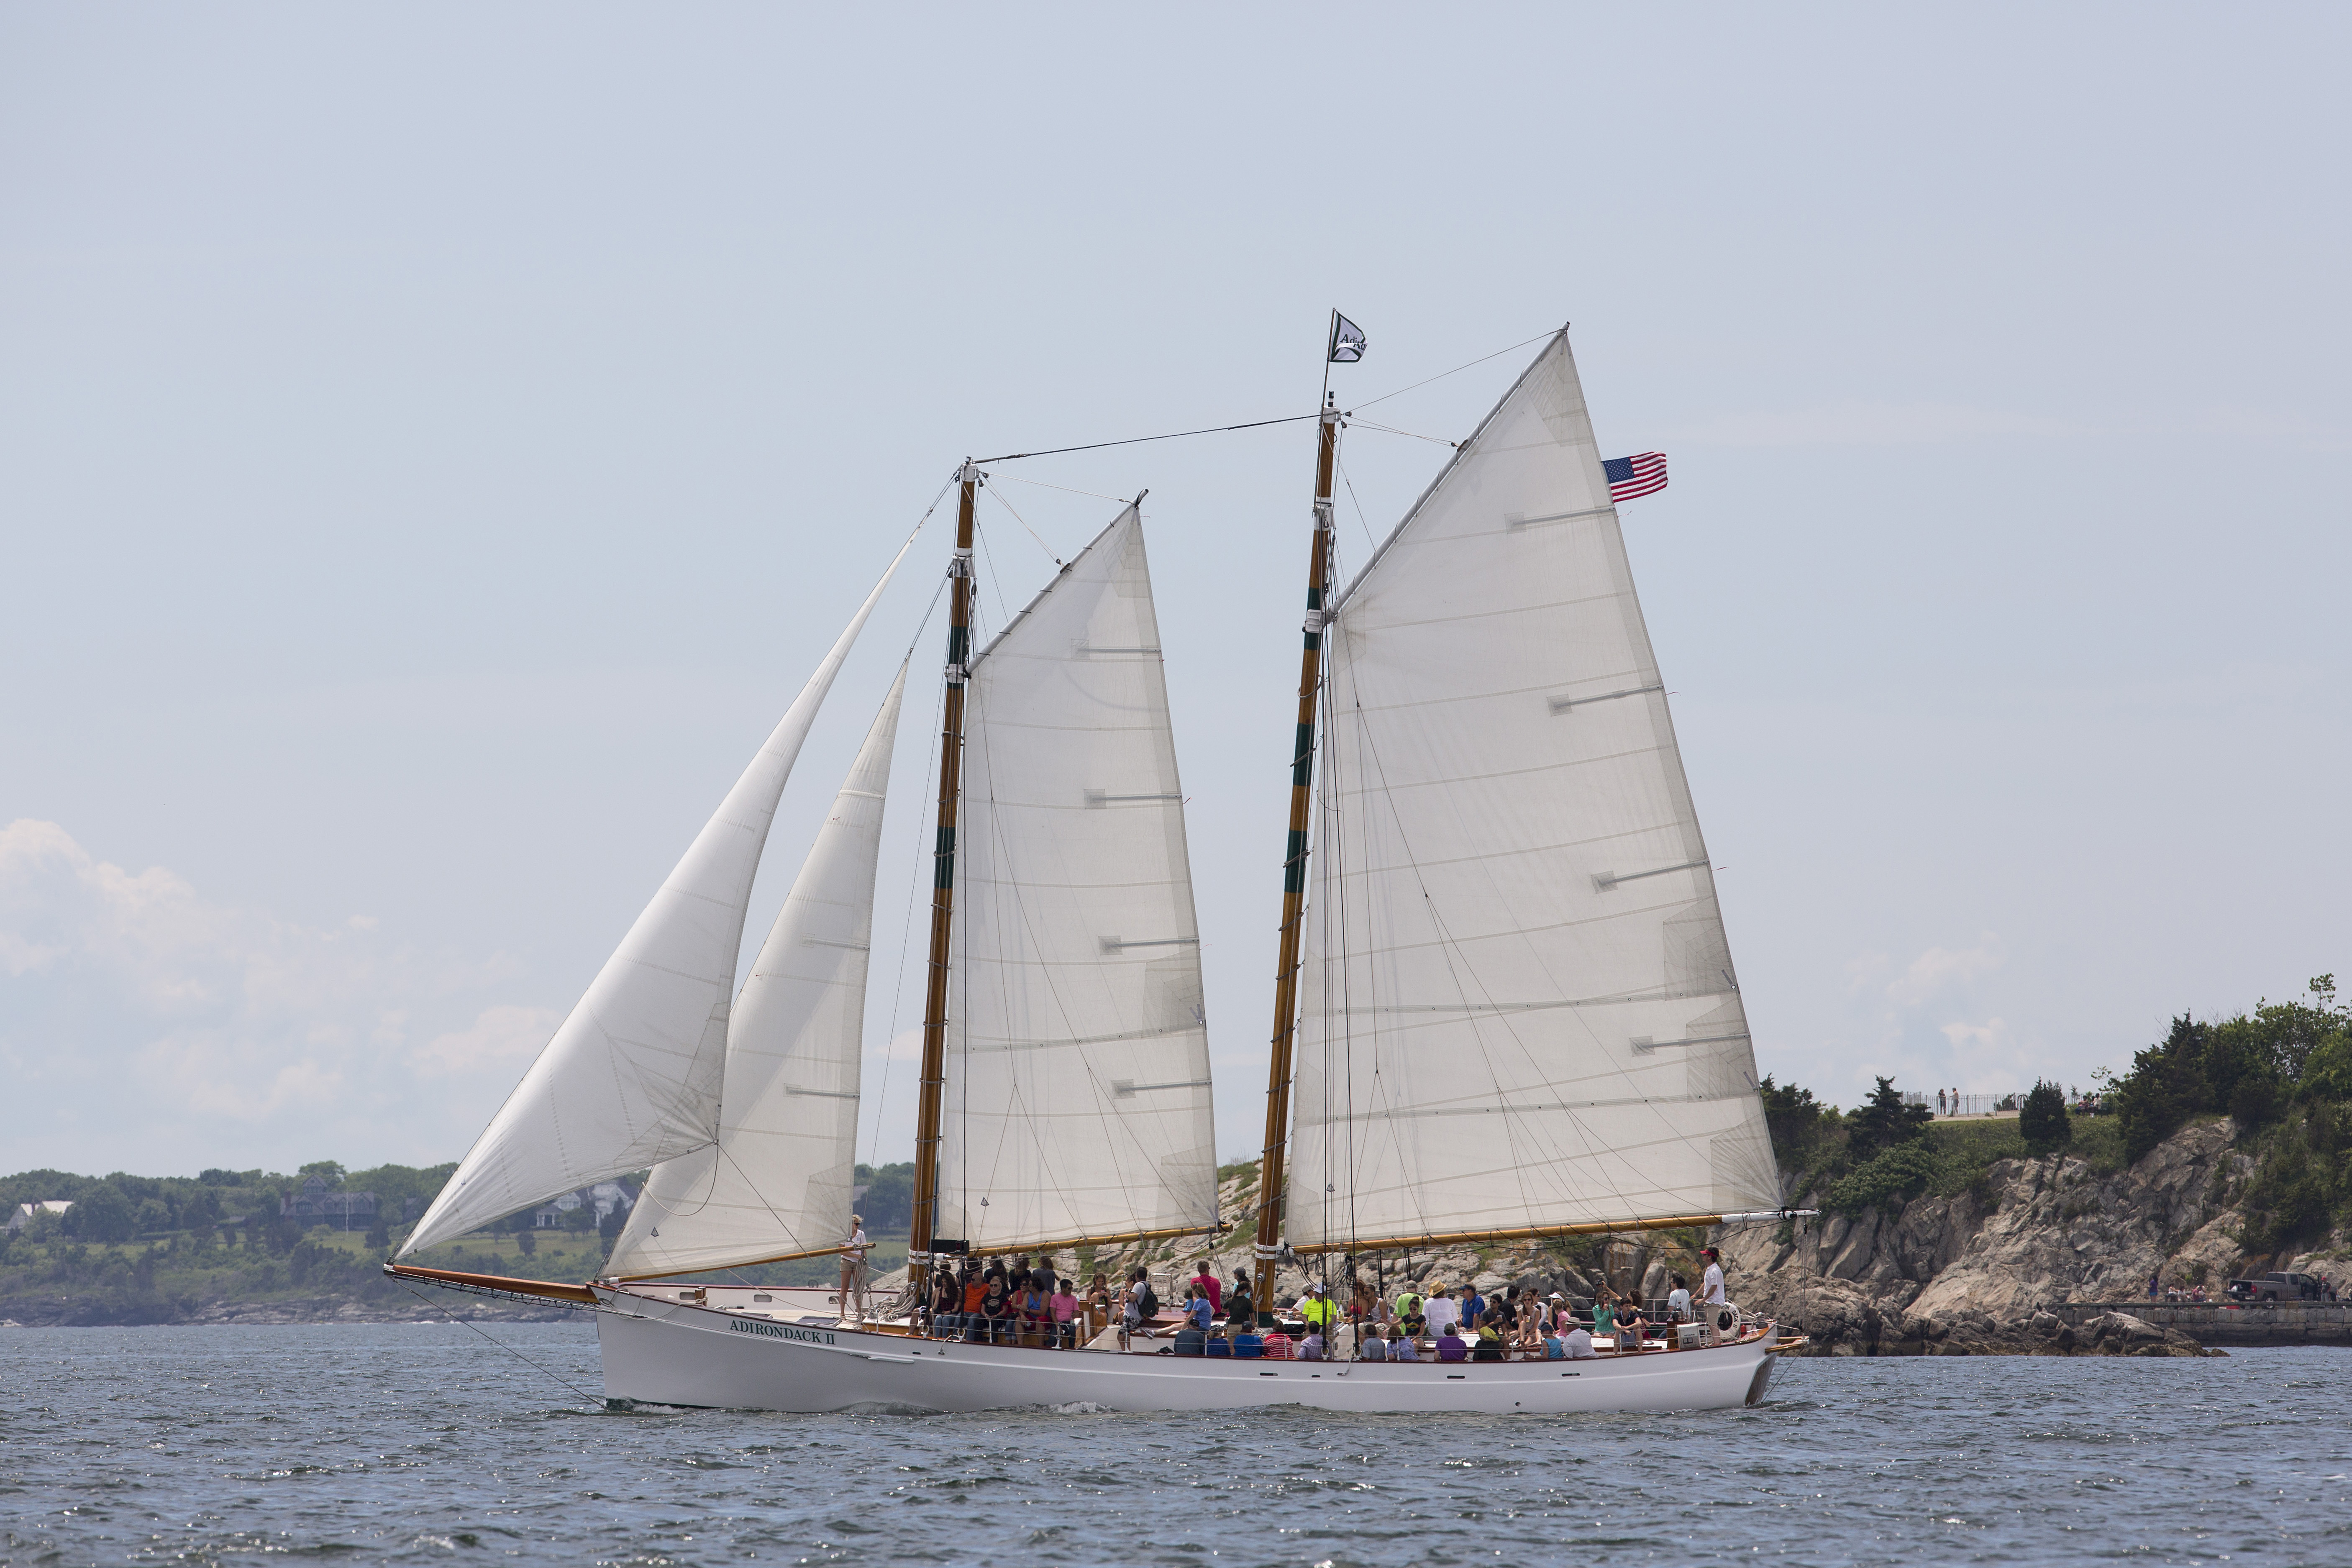 Adirondack II sailing around Newport Harbor.